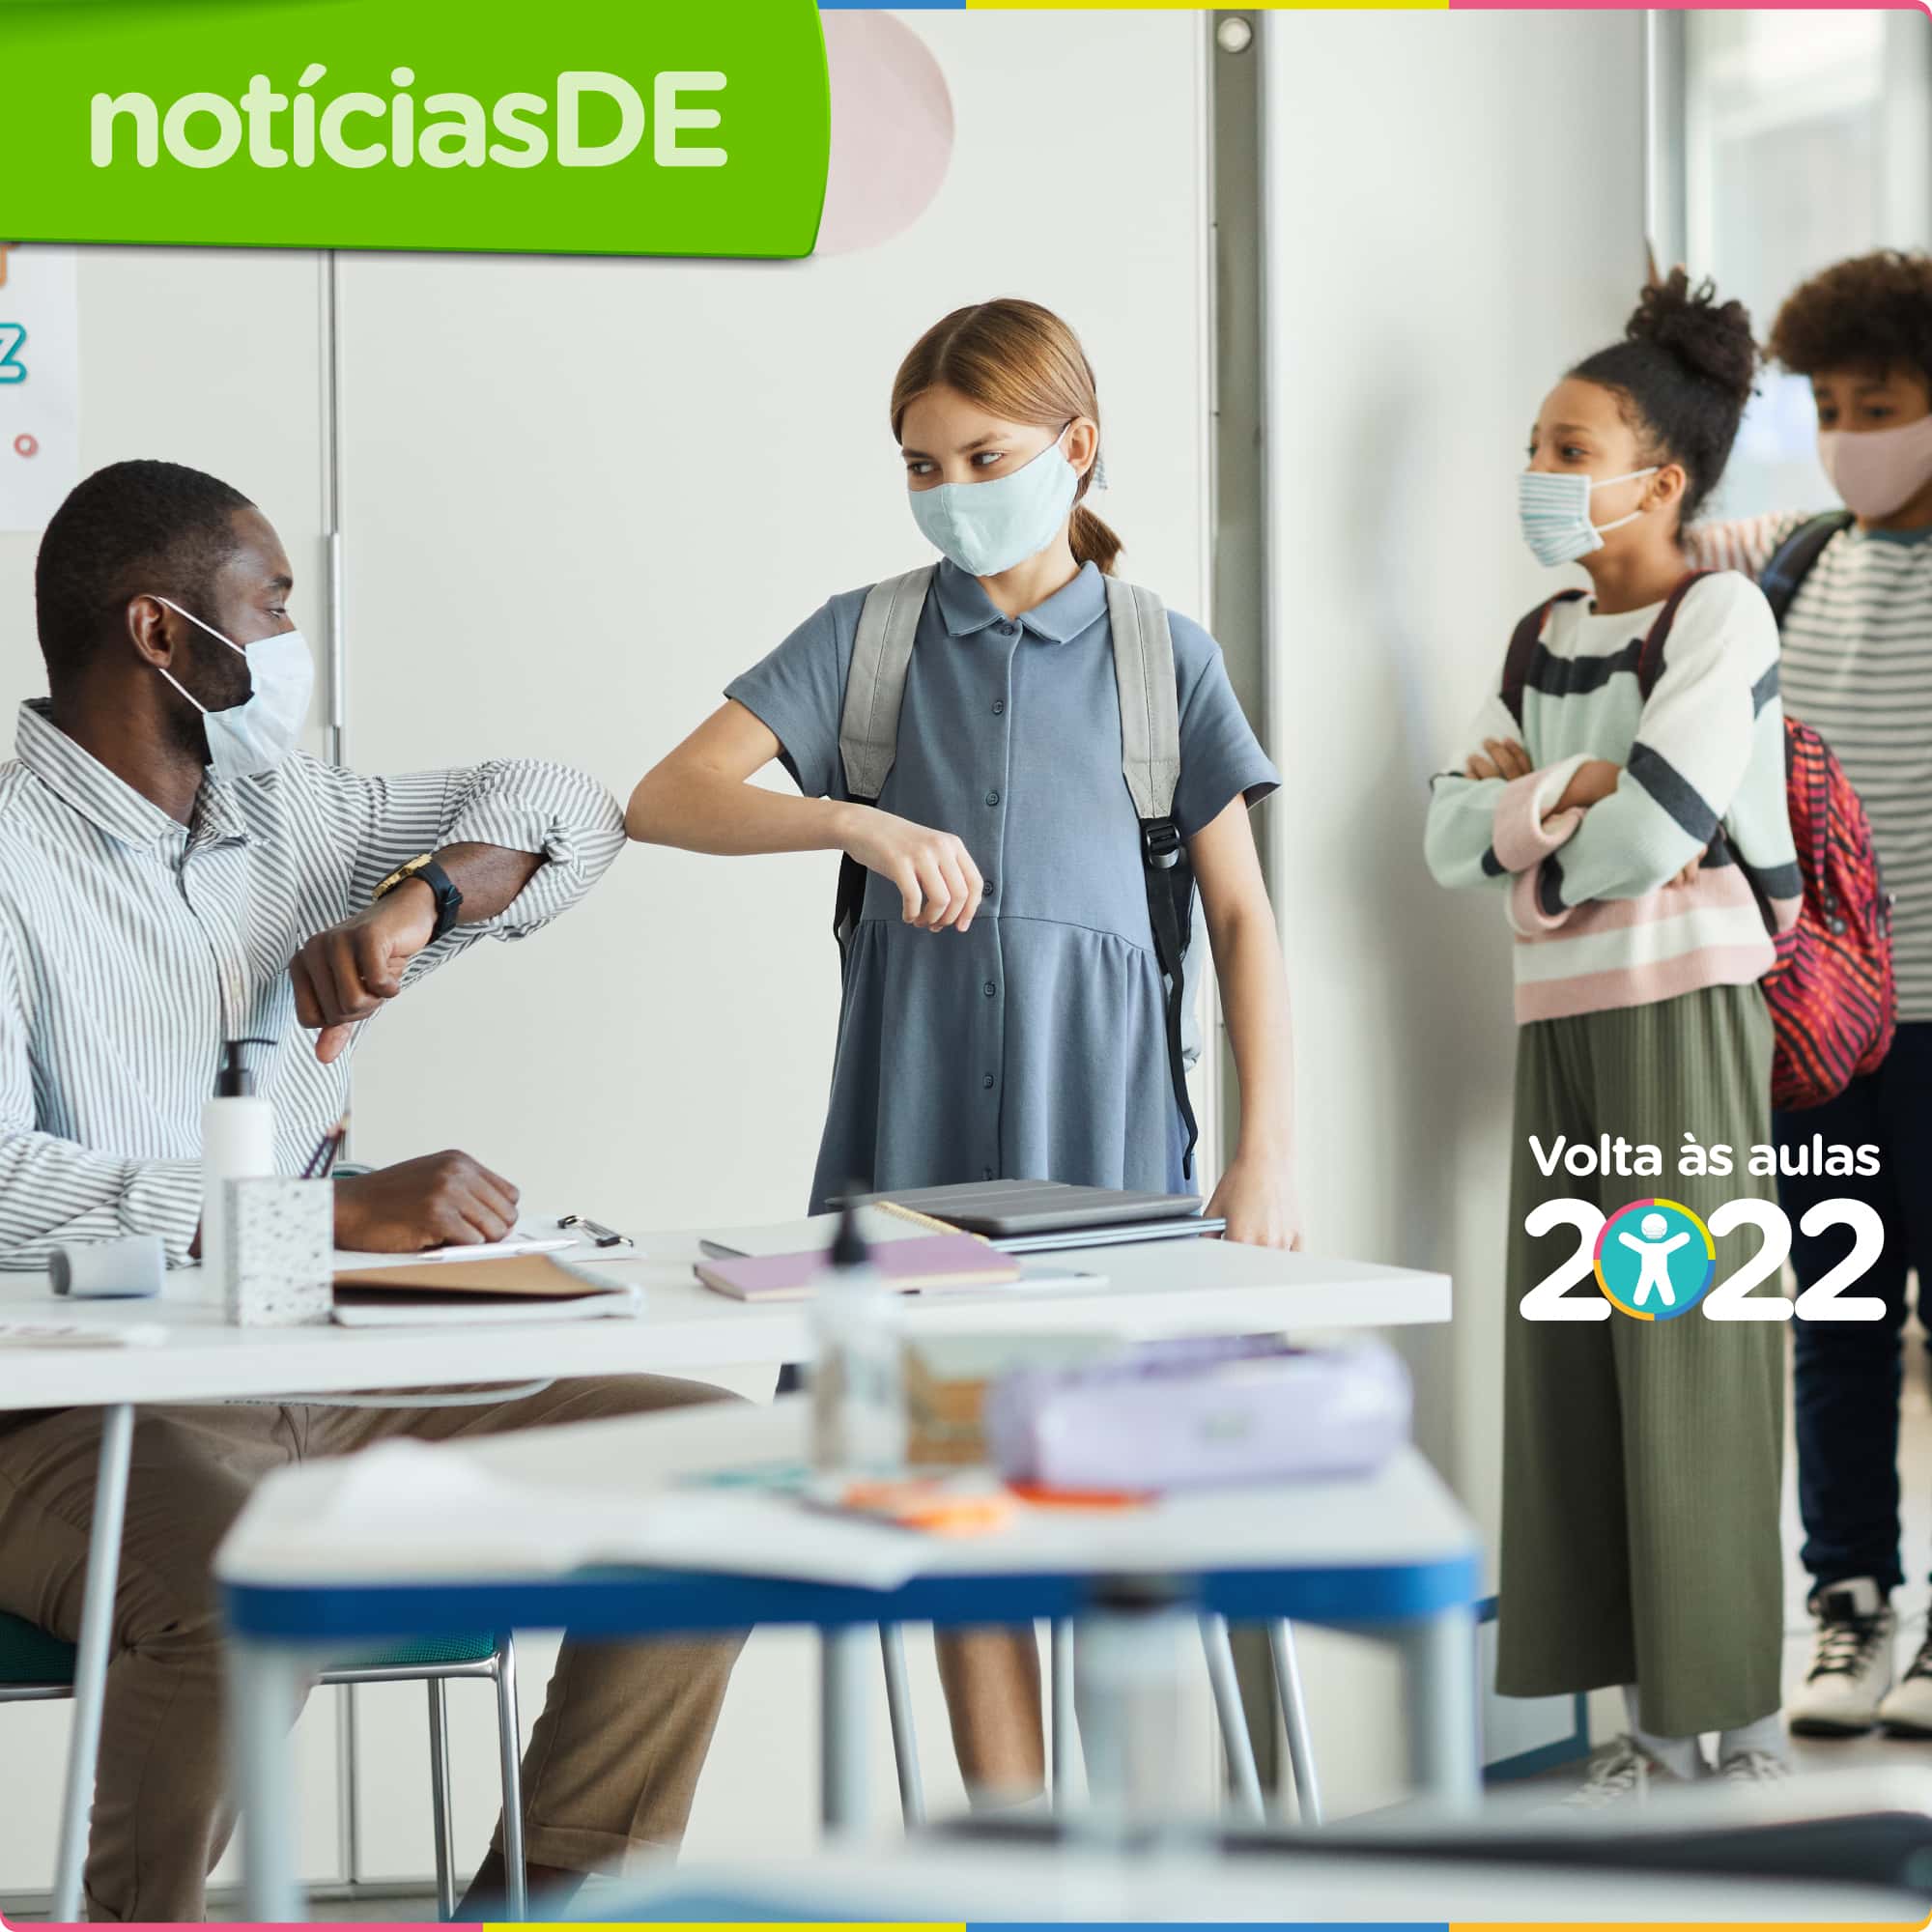 Escolas abertas na volta às aulas 2022 - notíciasDE 47